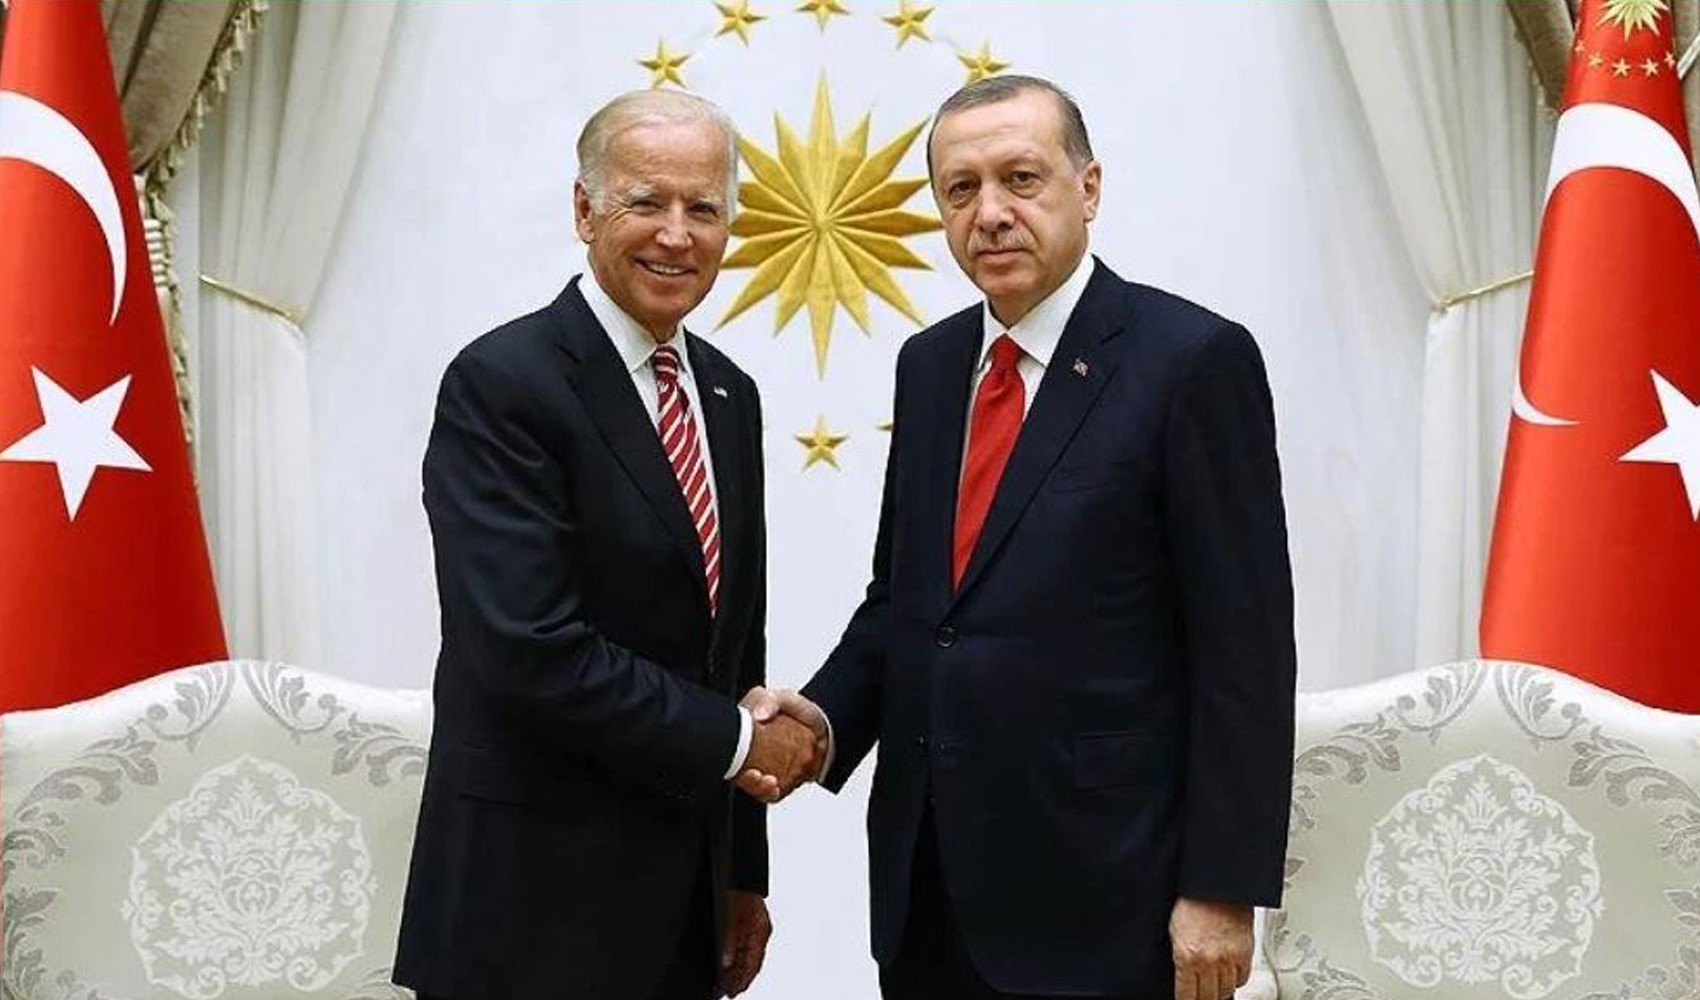 Cumhurbaşkanı ve AKP Genel Başkanı Recep Tayyip Erdoğan, ilk kez Biden'ın davetlisi olarak Beyaz Saray'a gidecek